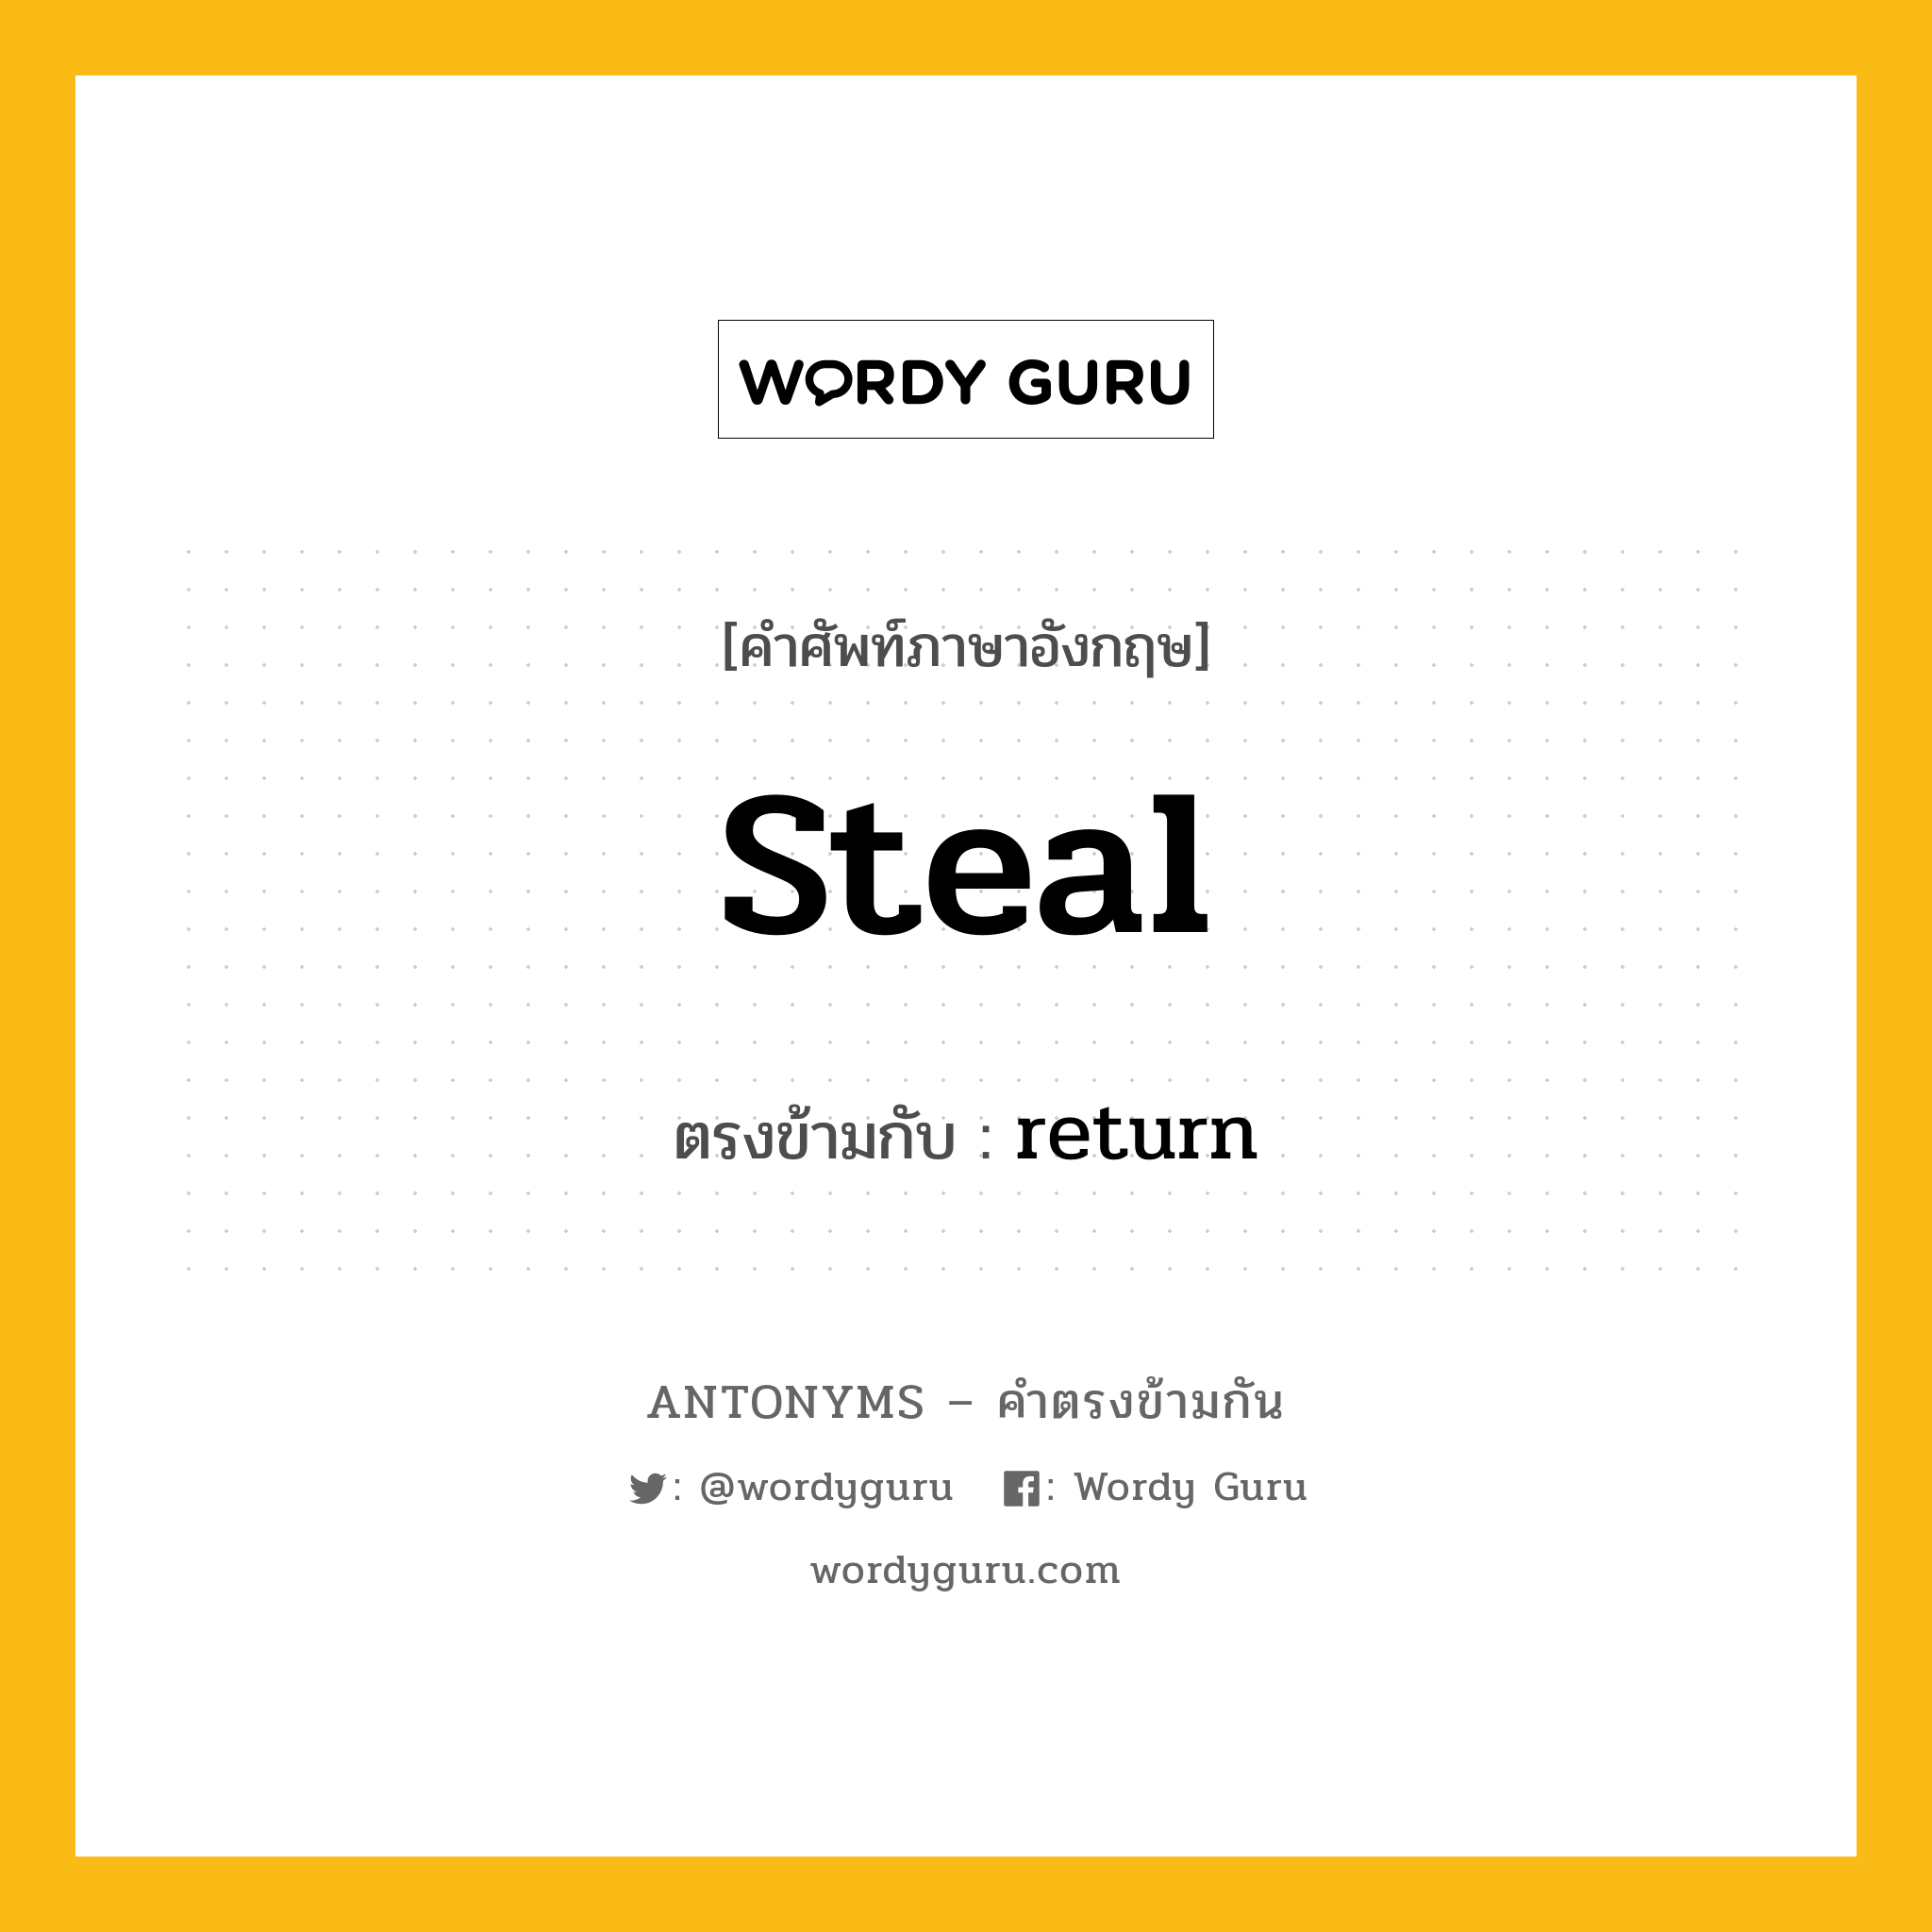 steal เป็นคำตรงข้ามกับคำไหนบ้าง?, คำศัพท์ภาษาอังกฤษ steal ตรงข้ามกับ return หมวด return